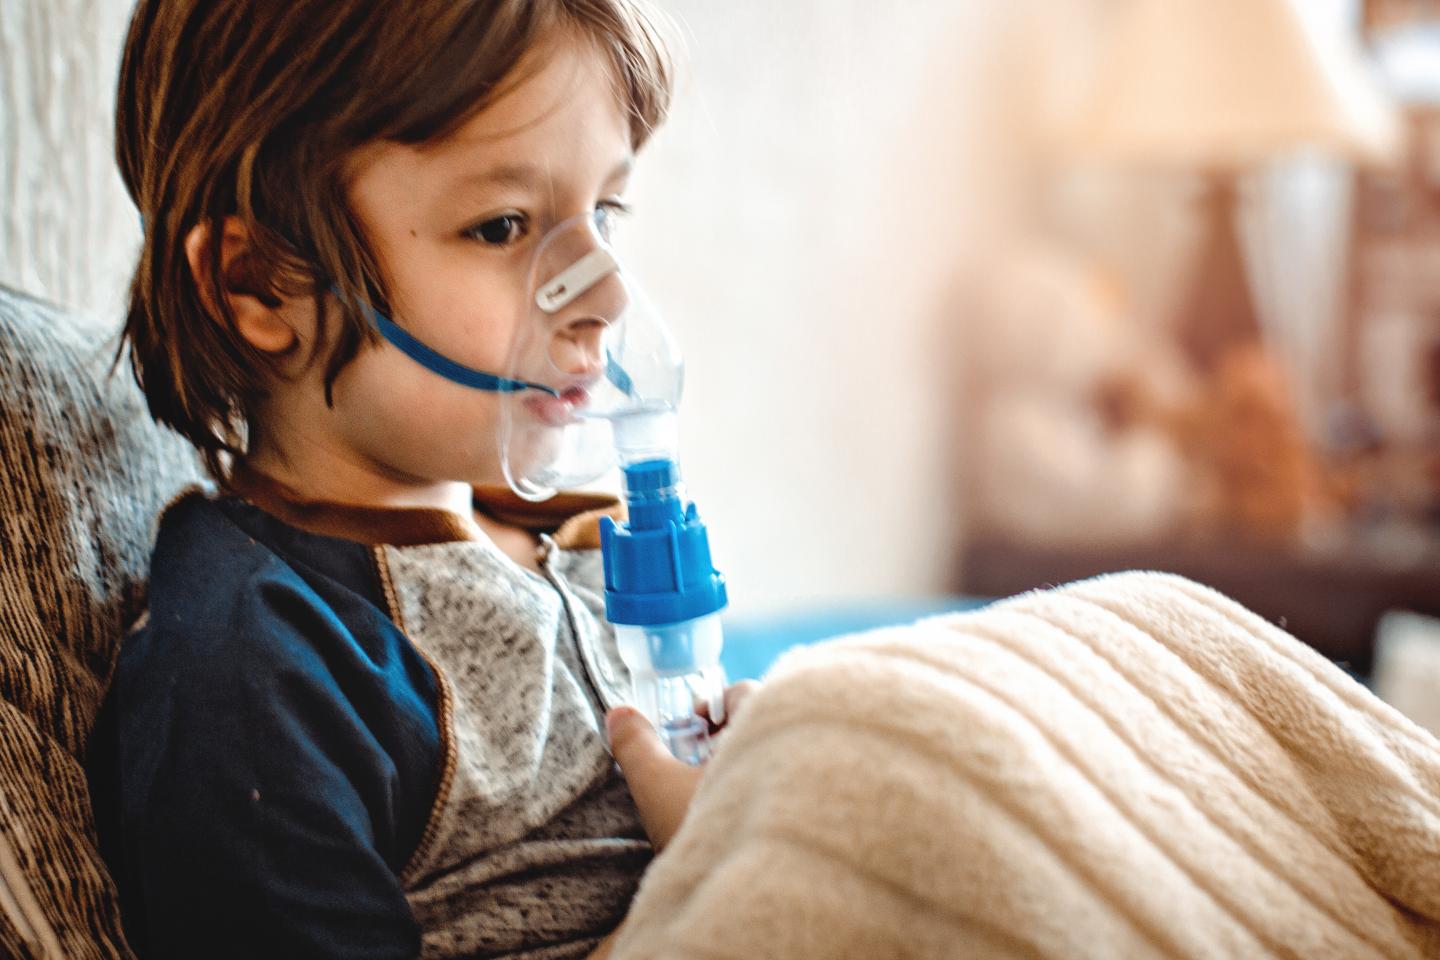 Asthma in kids